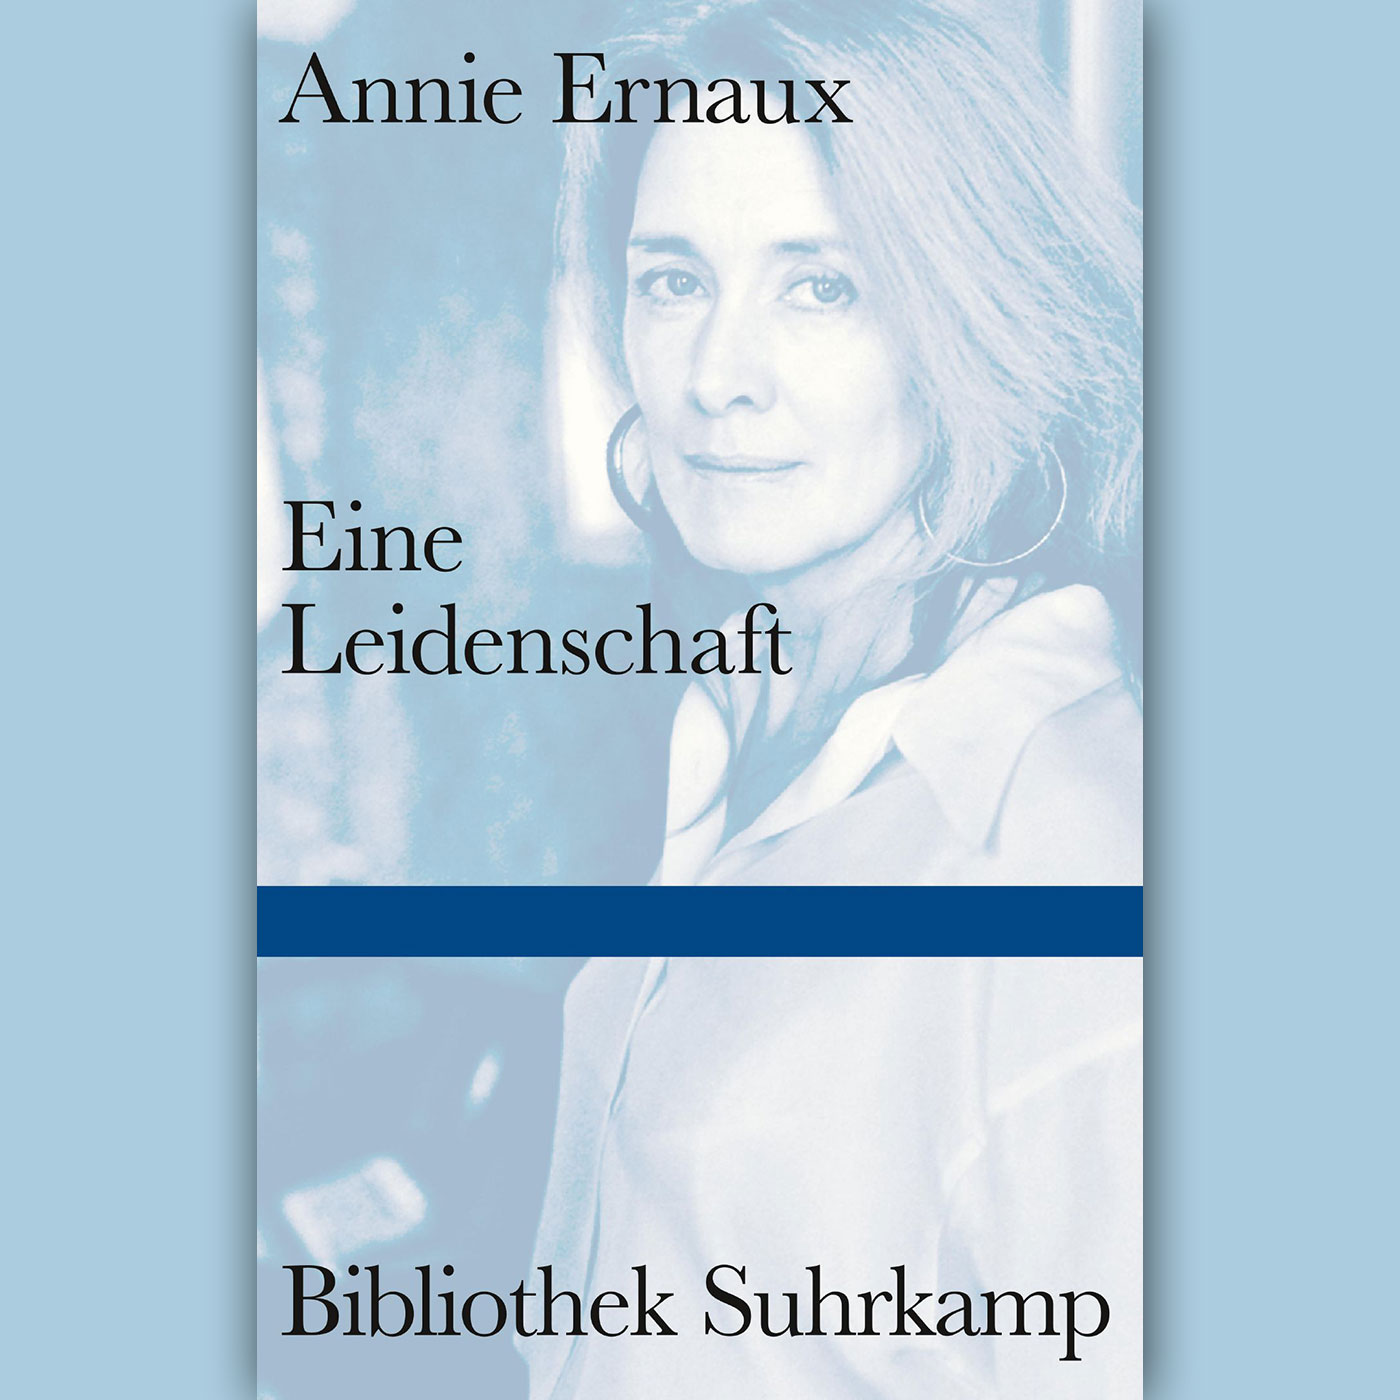 Ein Buch, zwei Stimmen: Annie Ernaux: "Eine Leidenschaft"